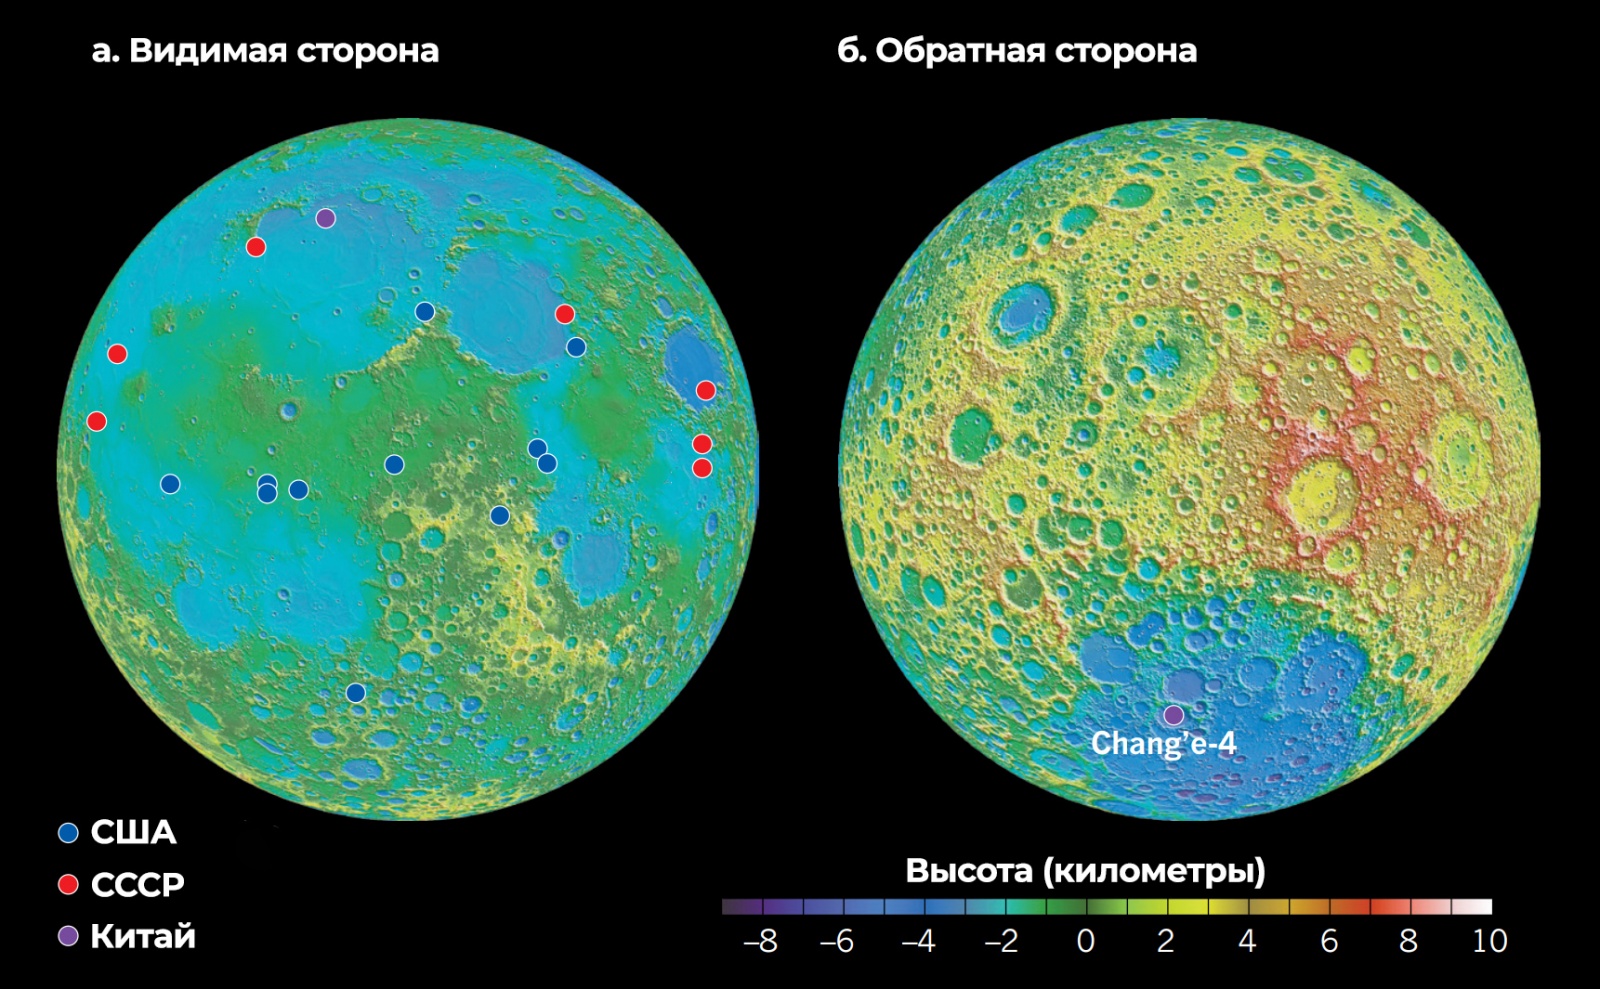 Миссия «Чанъэ-4» — результаты пятого лунного дня: проблемы с ровером «Юйту-2» и новое научное открытие - 52